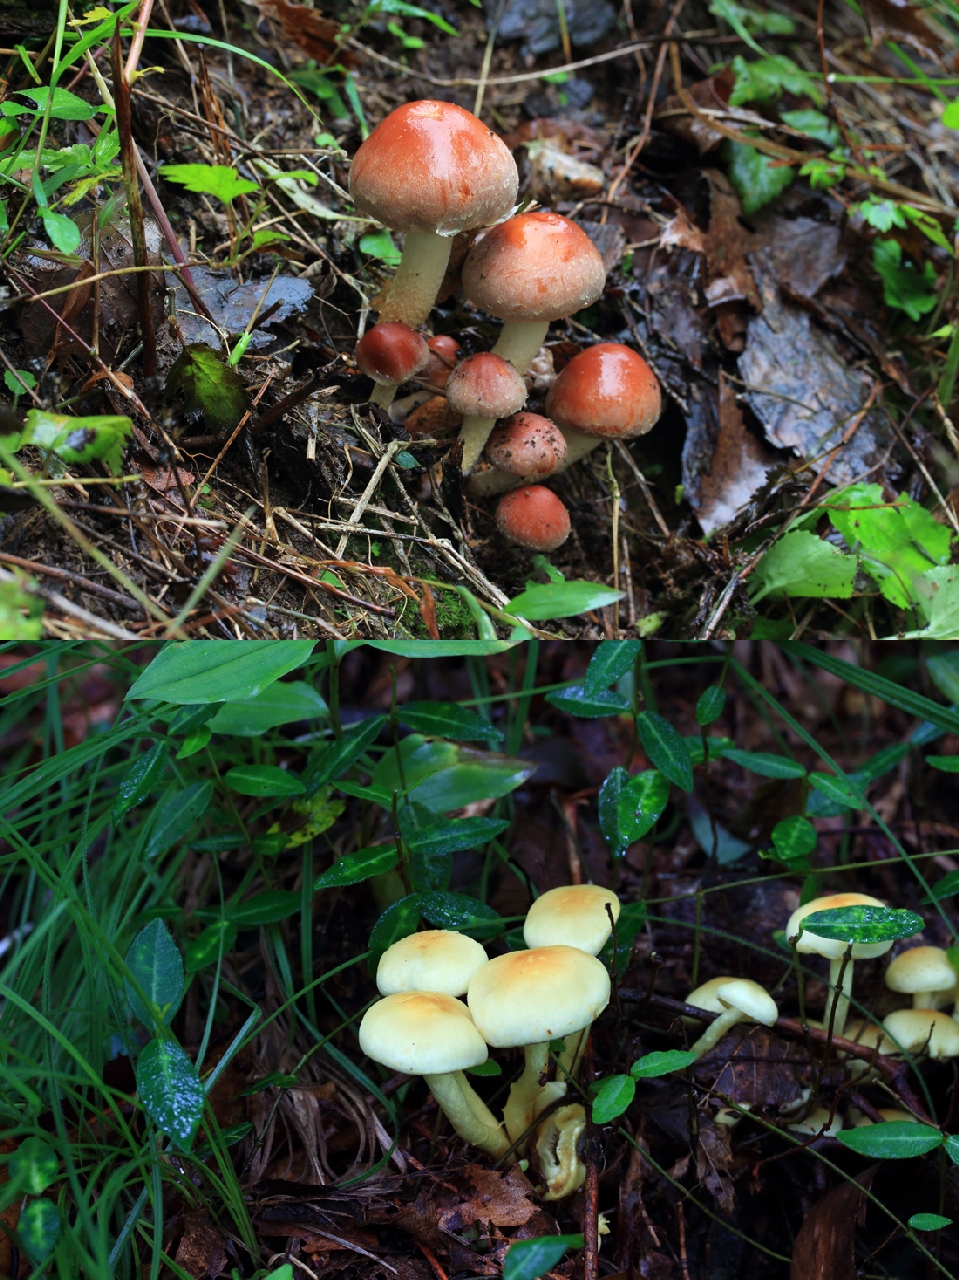 식용버섯인 ‘개암버섯’(위)과 독버섯인 ‘노란개암버섯’(아래). 노란개암버섯은 버섯 전체가 더 밝은 노란색을 띤다. 
그러나 야외에서는 색깔의 정확한 구별이 쉽지 않기 때문에 주의해야 한다.